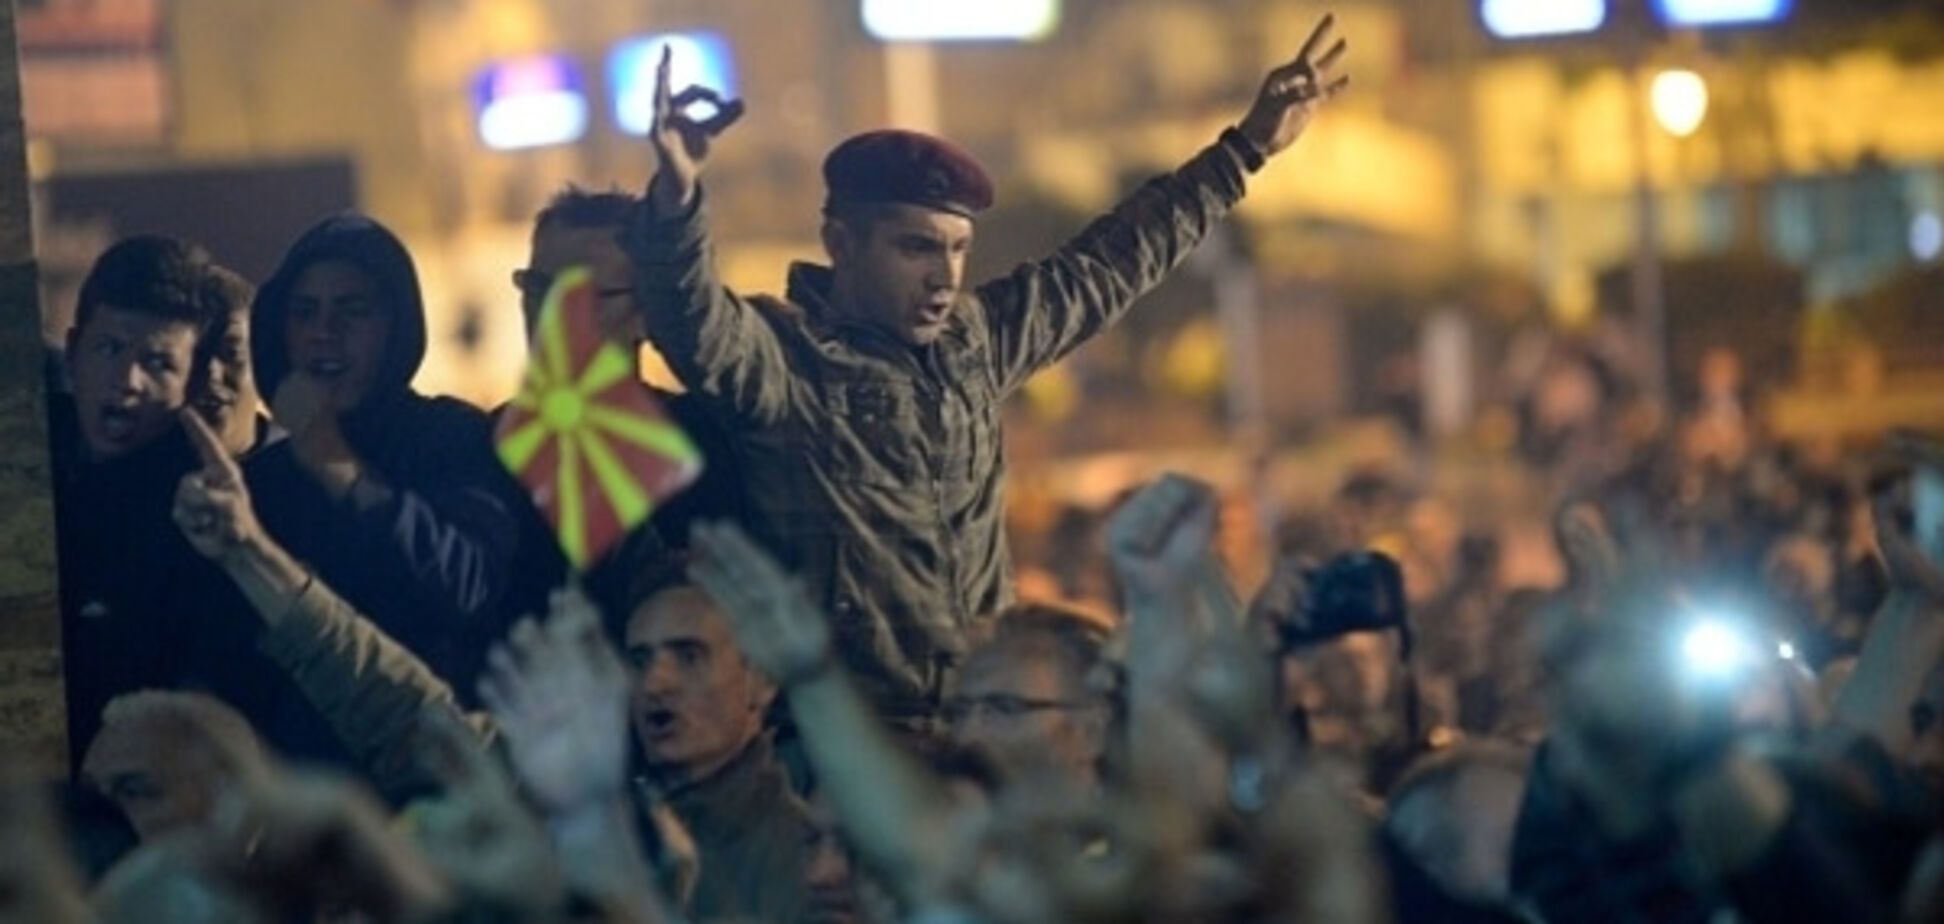 Протести в Македонії